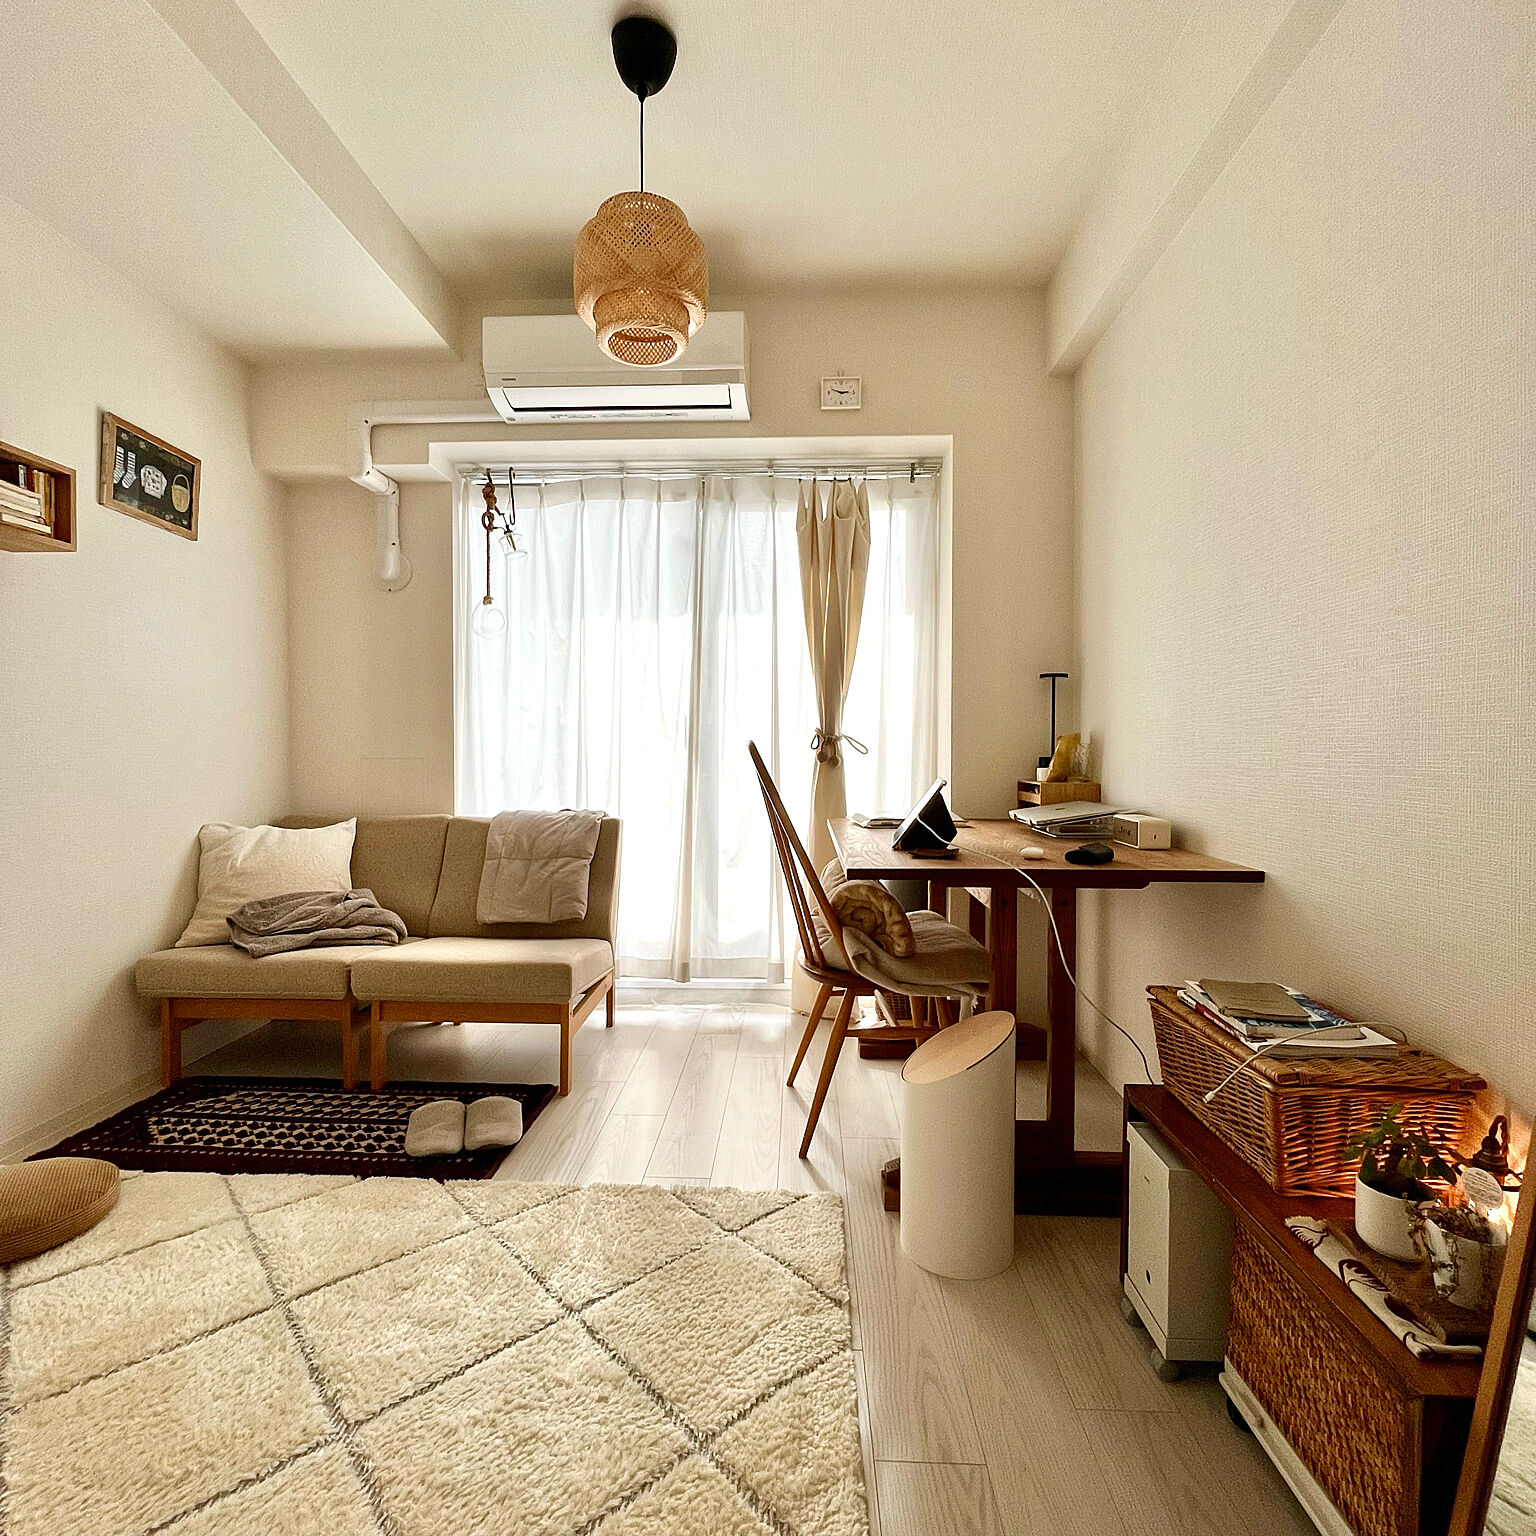 「21m2。本当に必要な物と軽やかに豊かに楽しむ、柔軟な余白のある部屋づくり」 by yohaku_2020さん